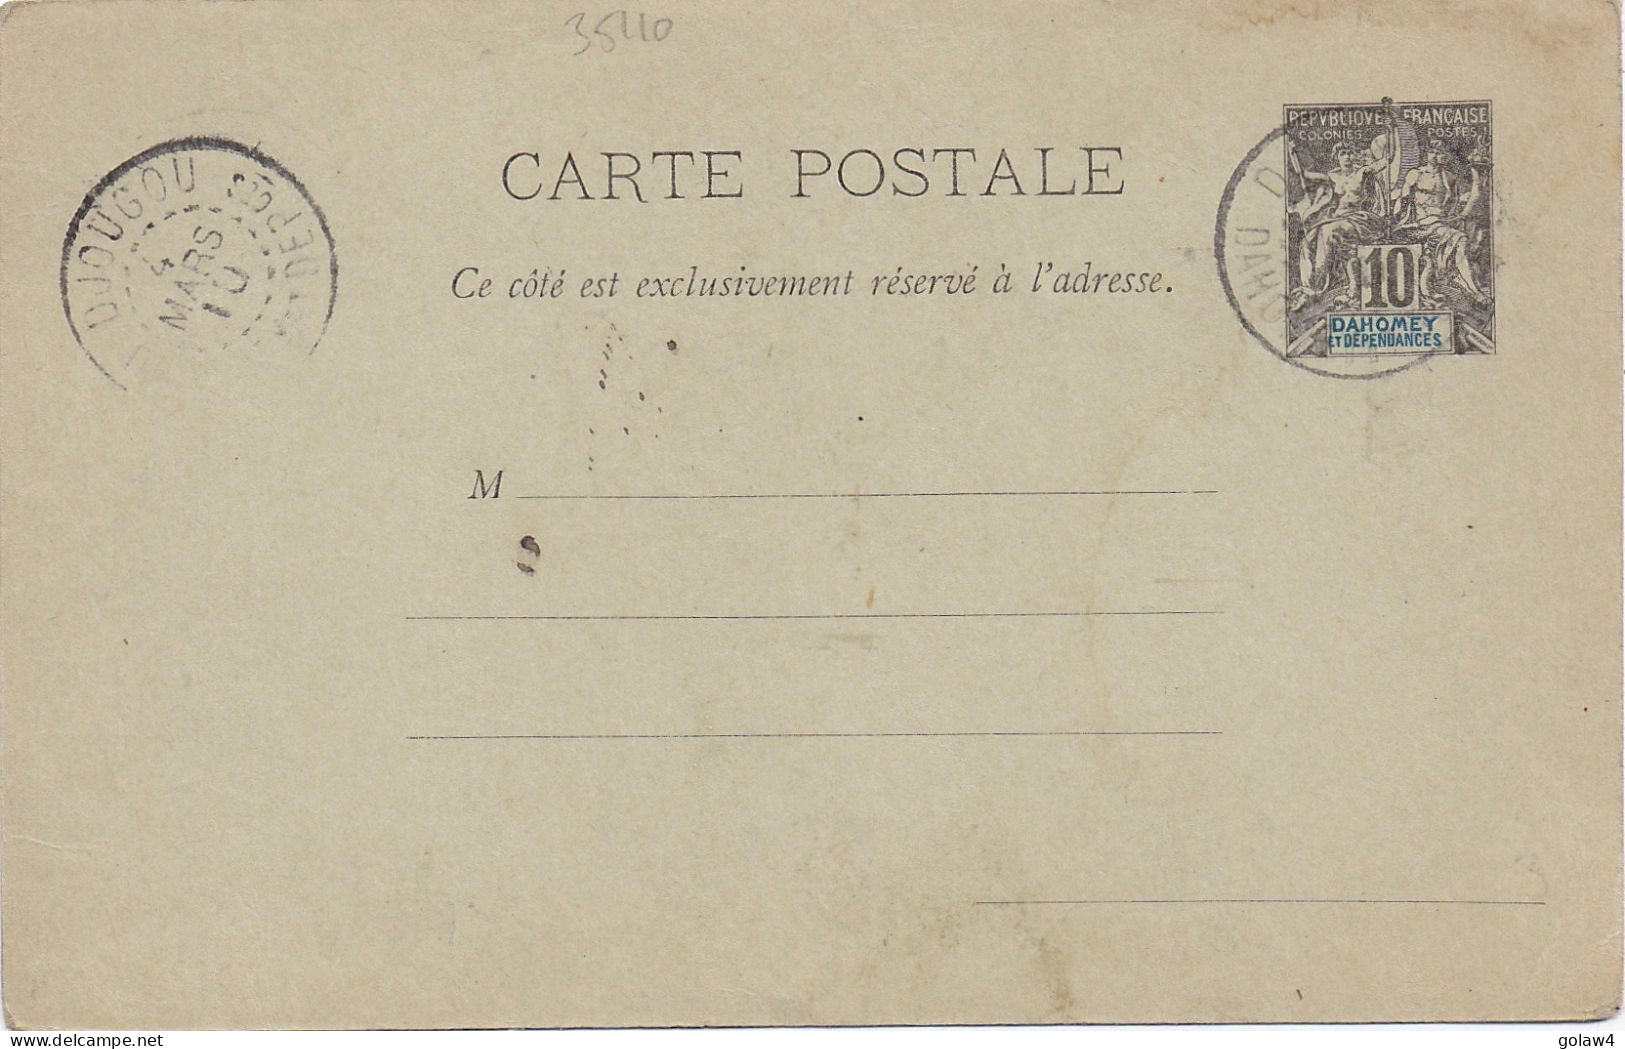 35110# ENTIER POSTAL CARTE POSTALE Obl DJOUGOU DAHOMEY ET DEPENDANCES 1910 STATIONERY GANZSACHE - Brieven En Documenten